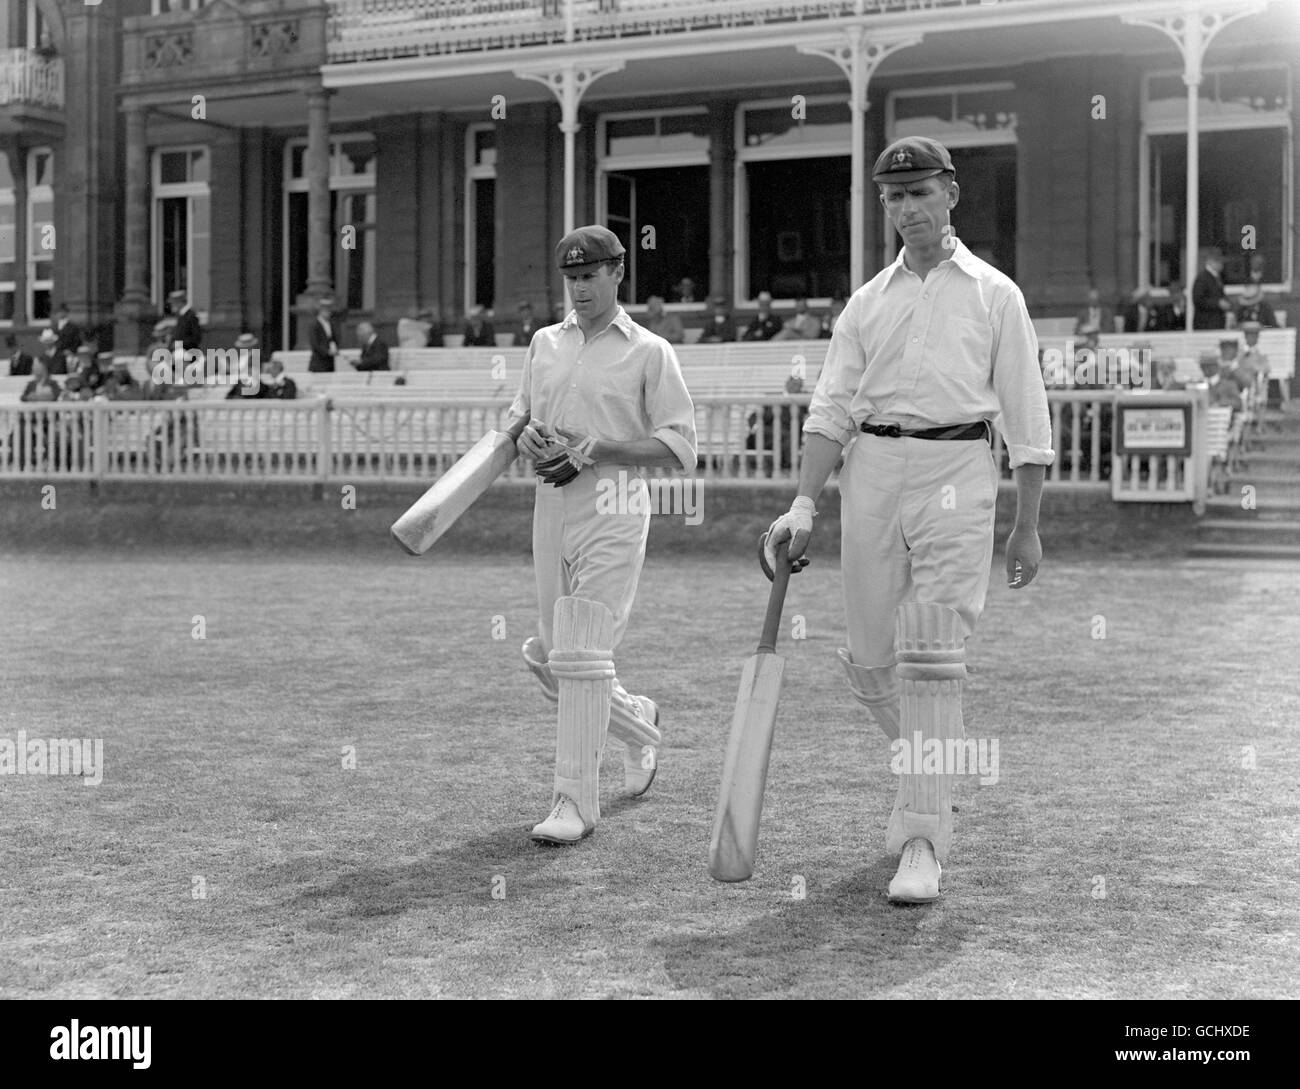 Cricket - torneo triangular - Australia v Sudáfrica - Lord's Foto de stock